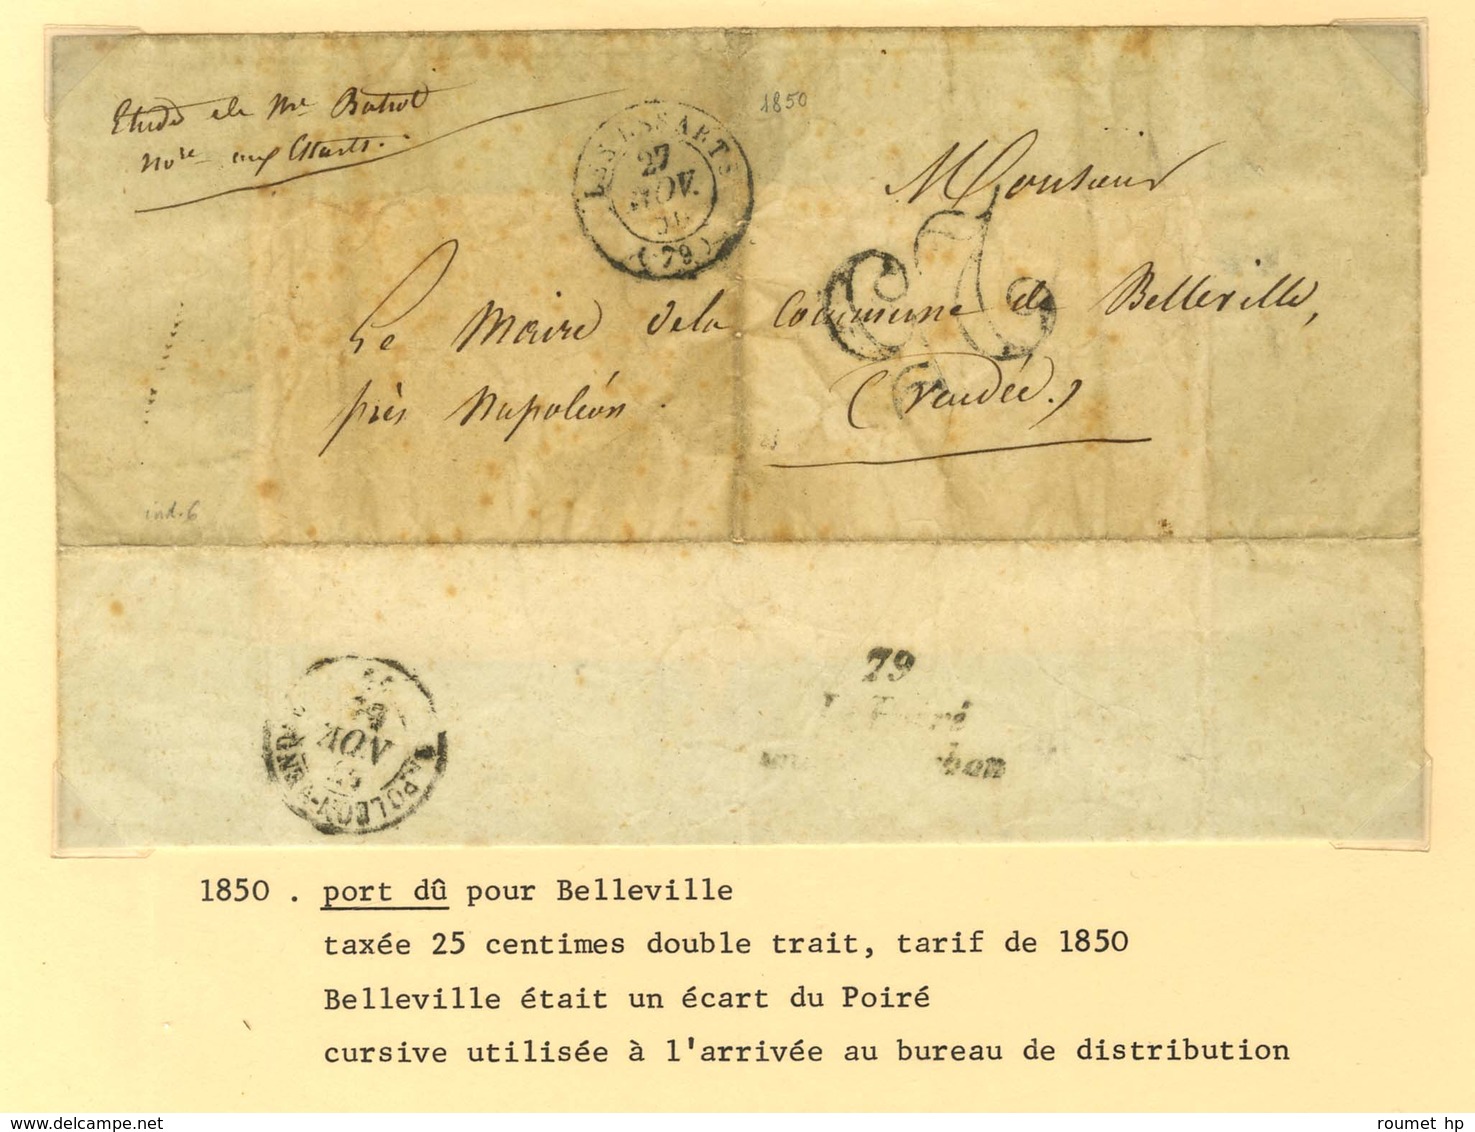 Lot de 12 marques postales et oblitérations de Mareuil et Poiré sur Vie. - B / TB.